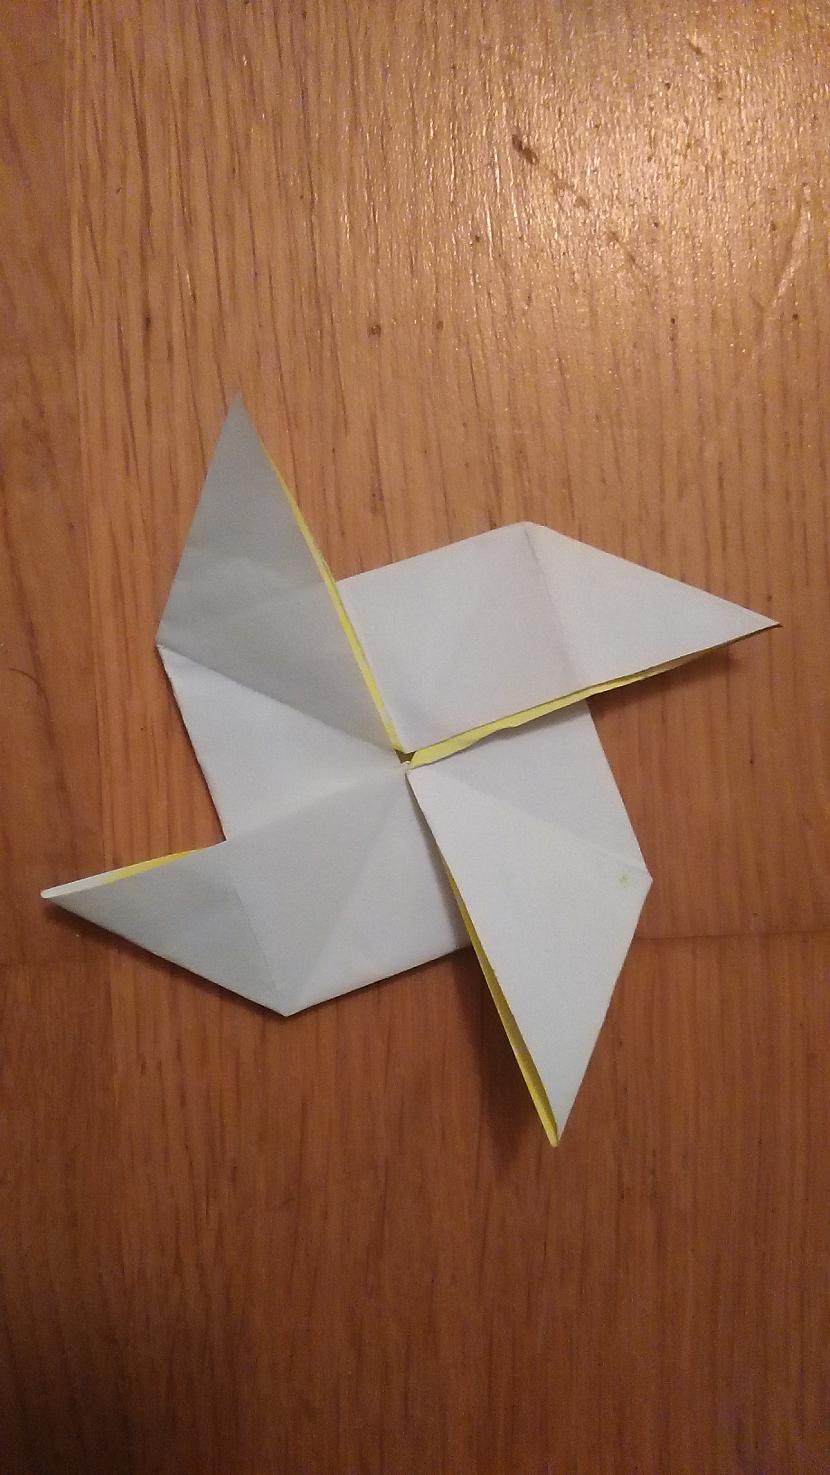 Un piespiežam tos un rezultāts... Autors: Emchiks Origami "ninja star"